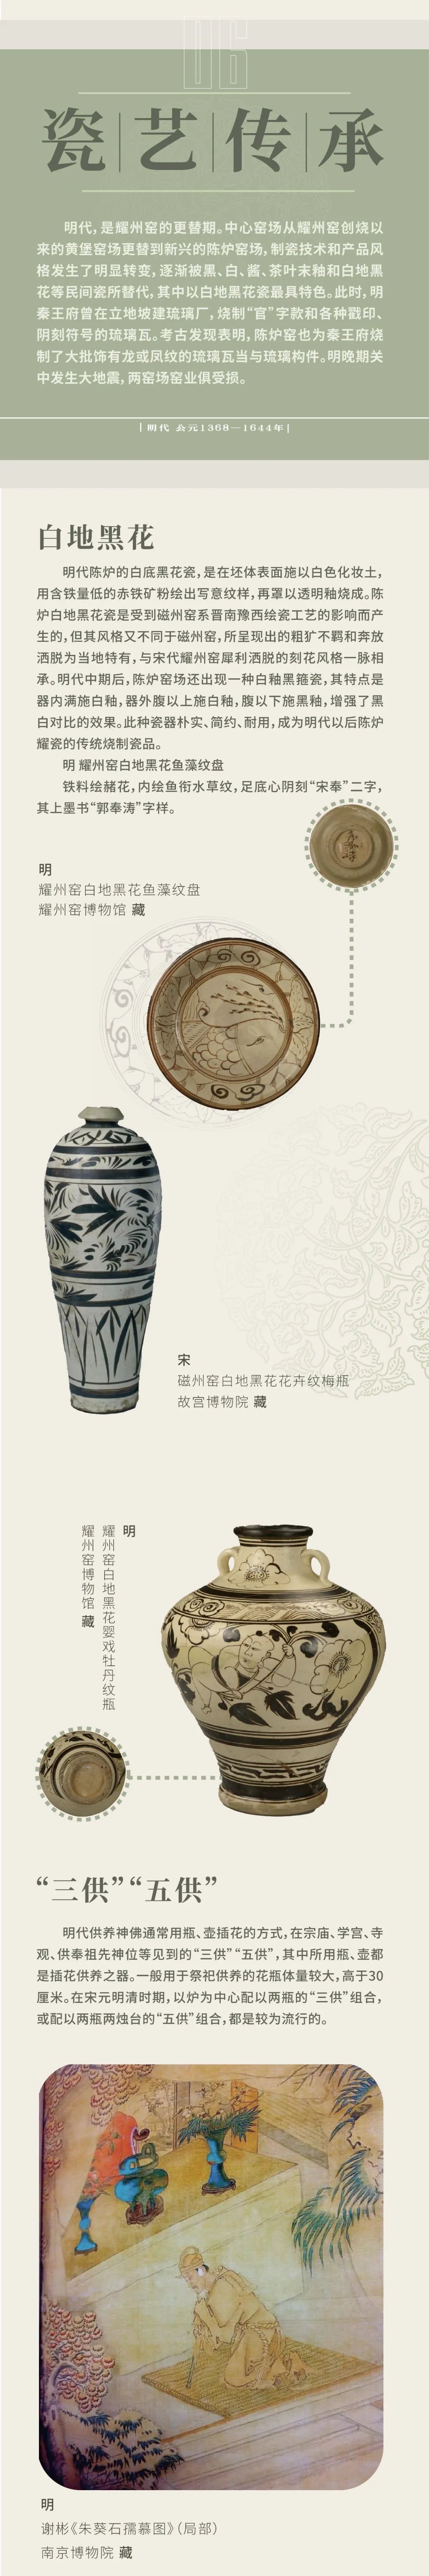 线上展览：《范金琢玉——耀州窑历代陶瓷精品展》第六期（瓷艺传承）